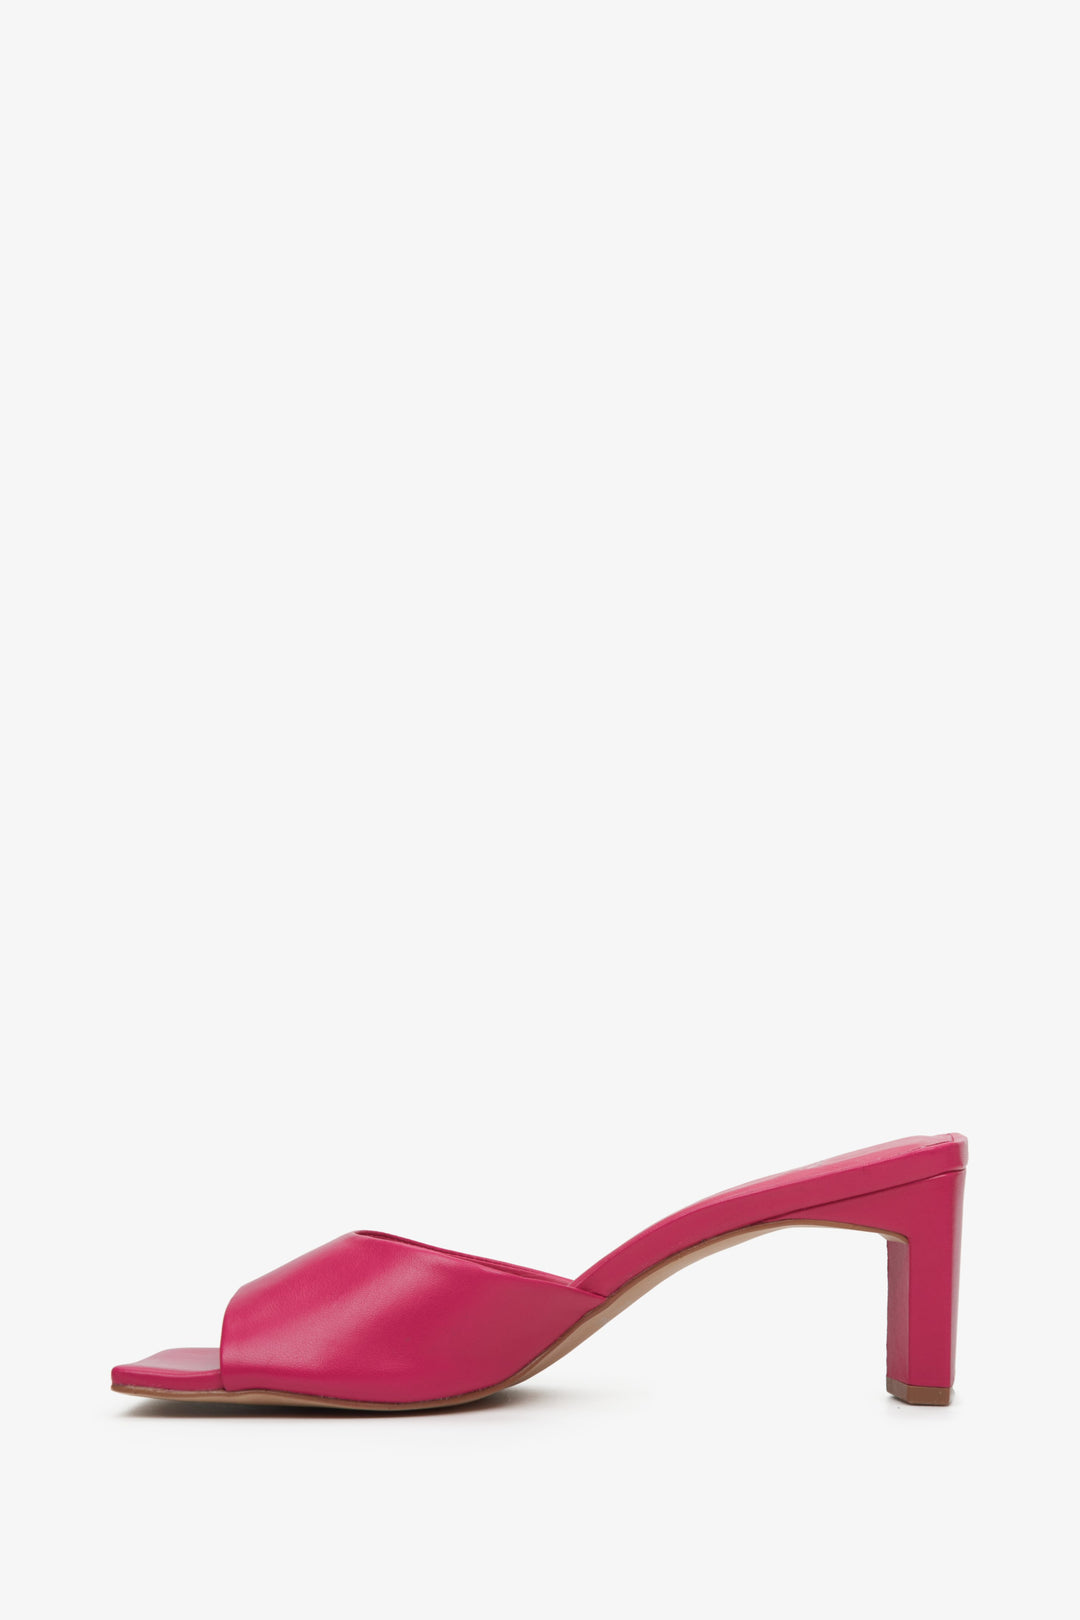 Eleganckie klapki damskie z włoskiej skóry naturalnej w kolorze różowym marki Estro - profil buta.